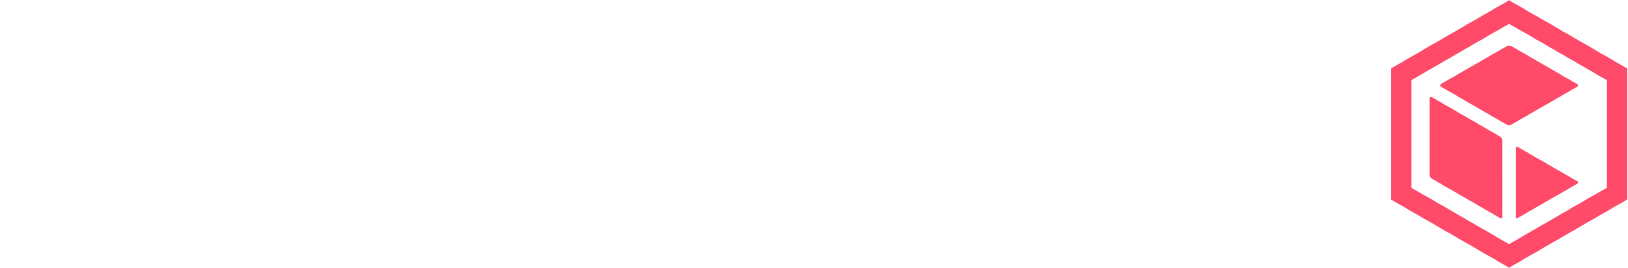 Commvault logo large for dark backgrounds (transparent PNG)